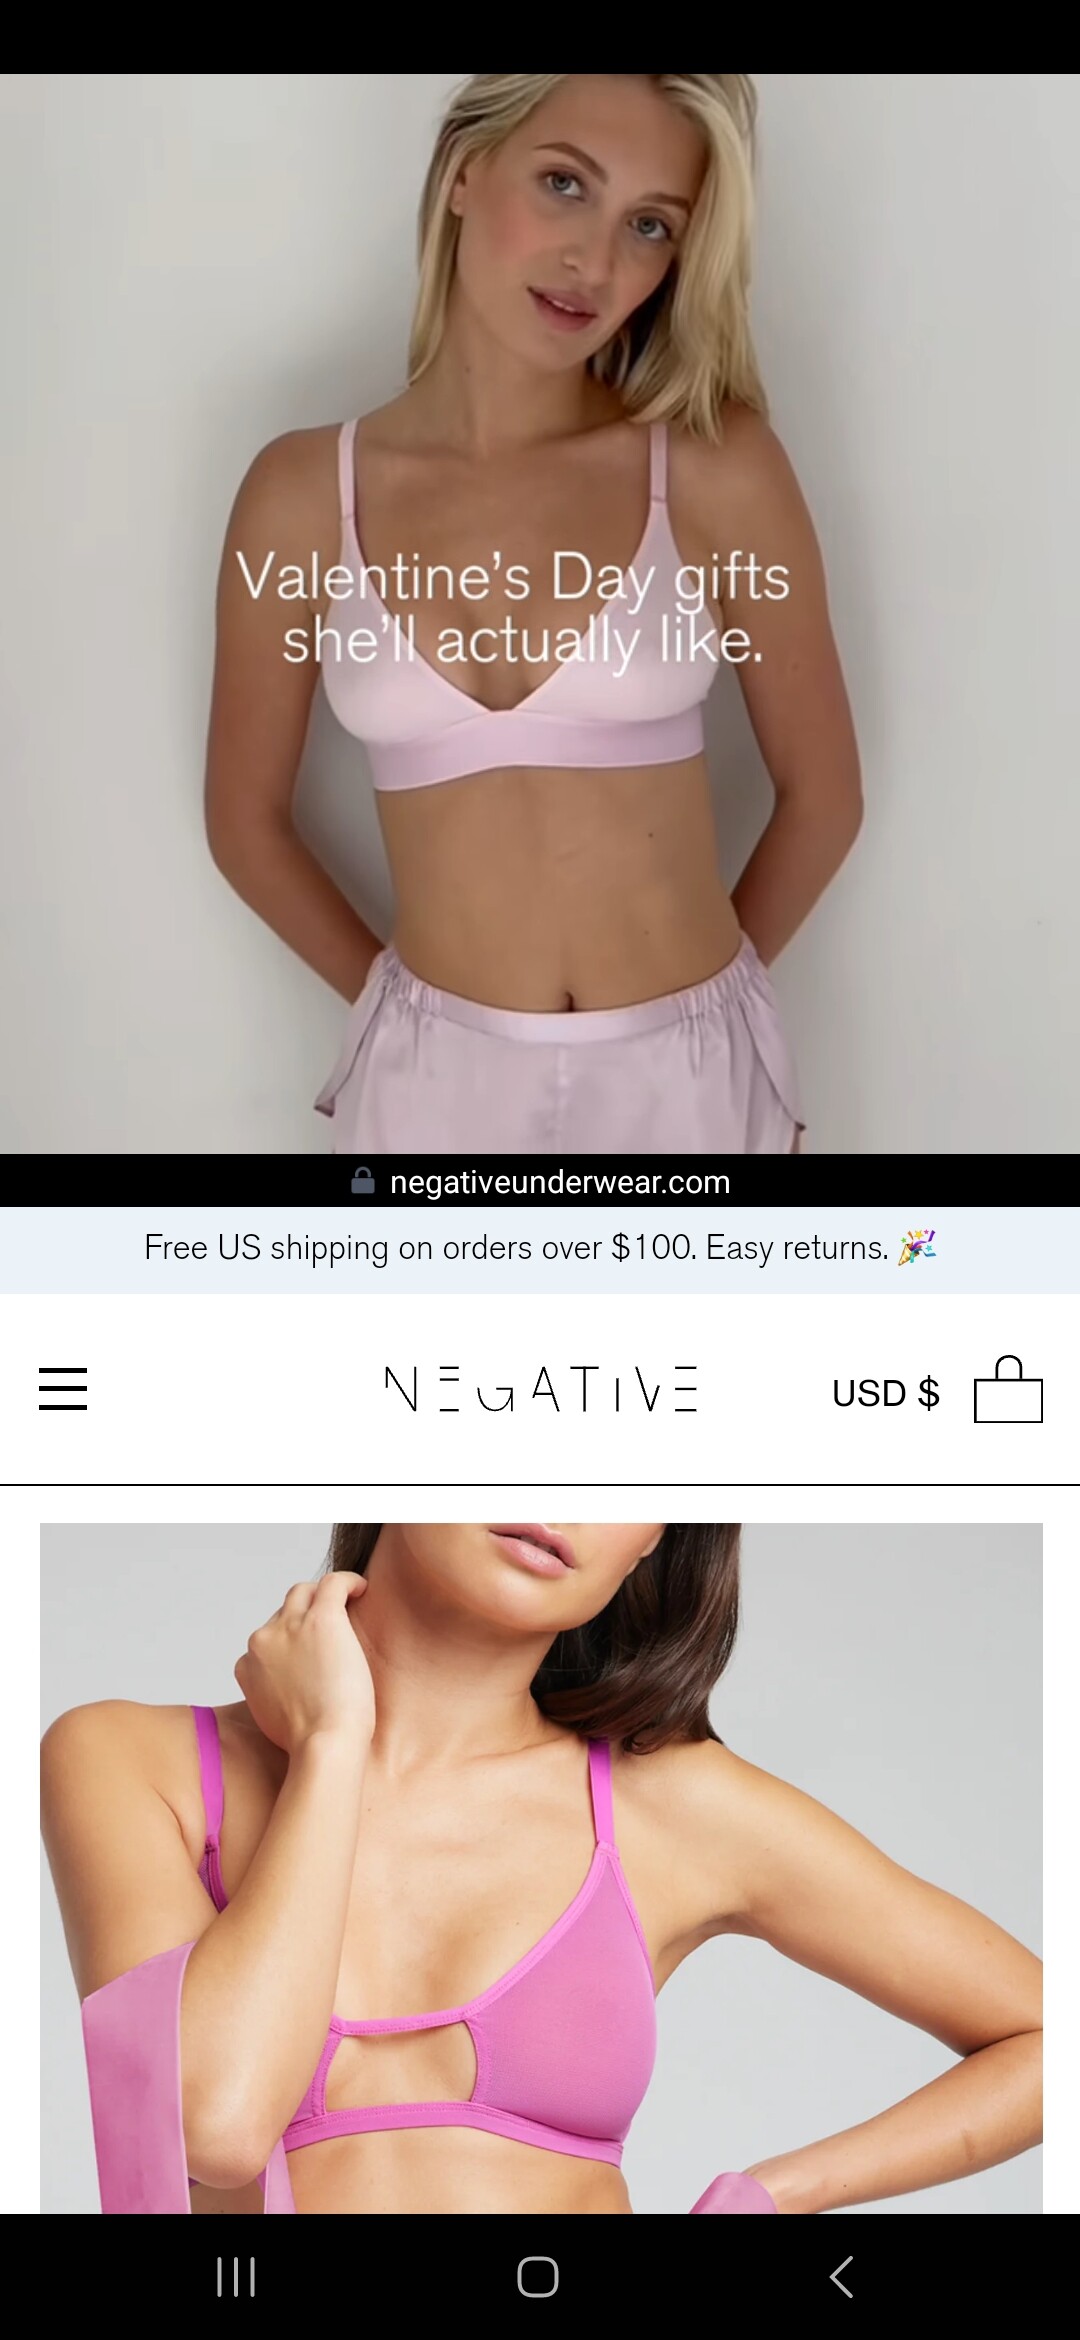 Negative Underwear Model - MODEL ID [help] - Bellazon